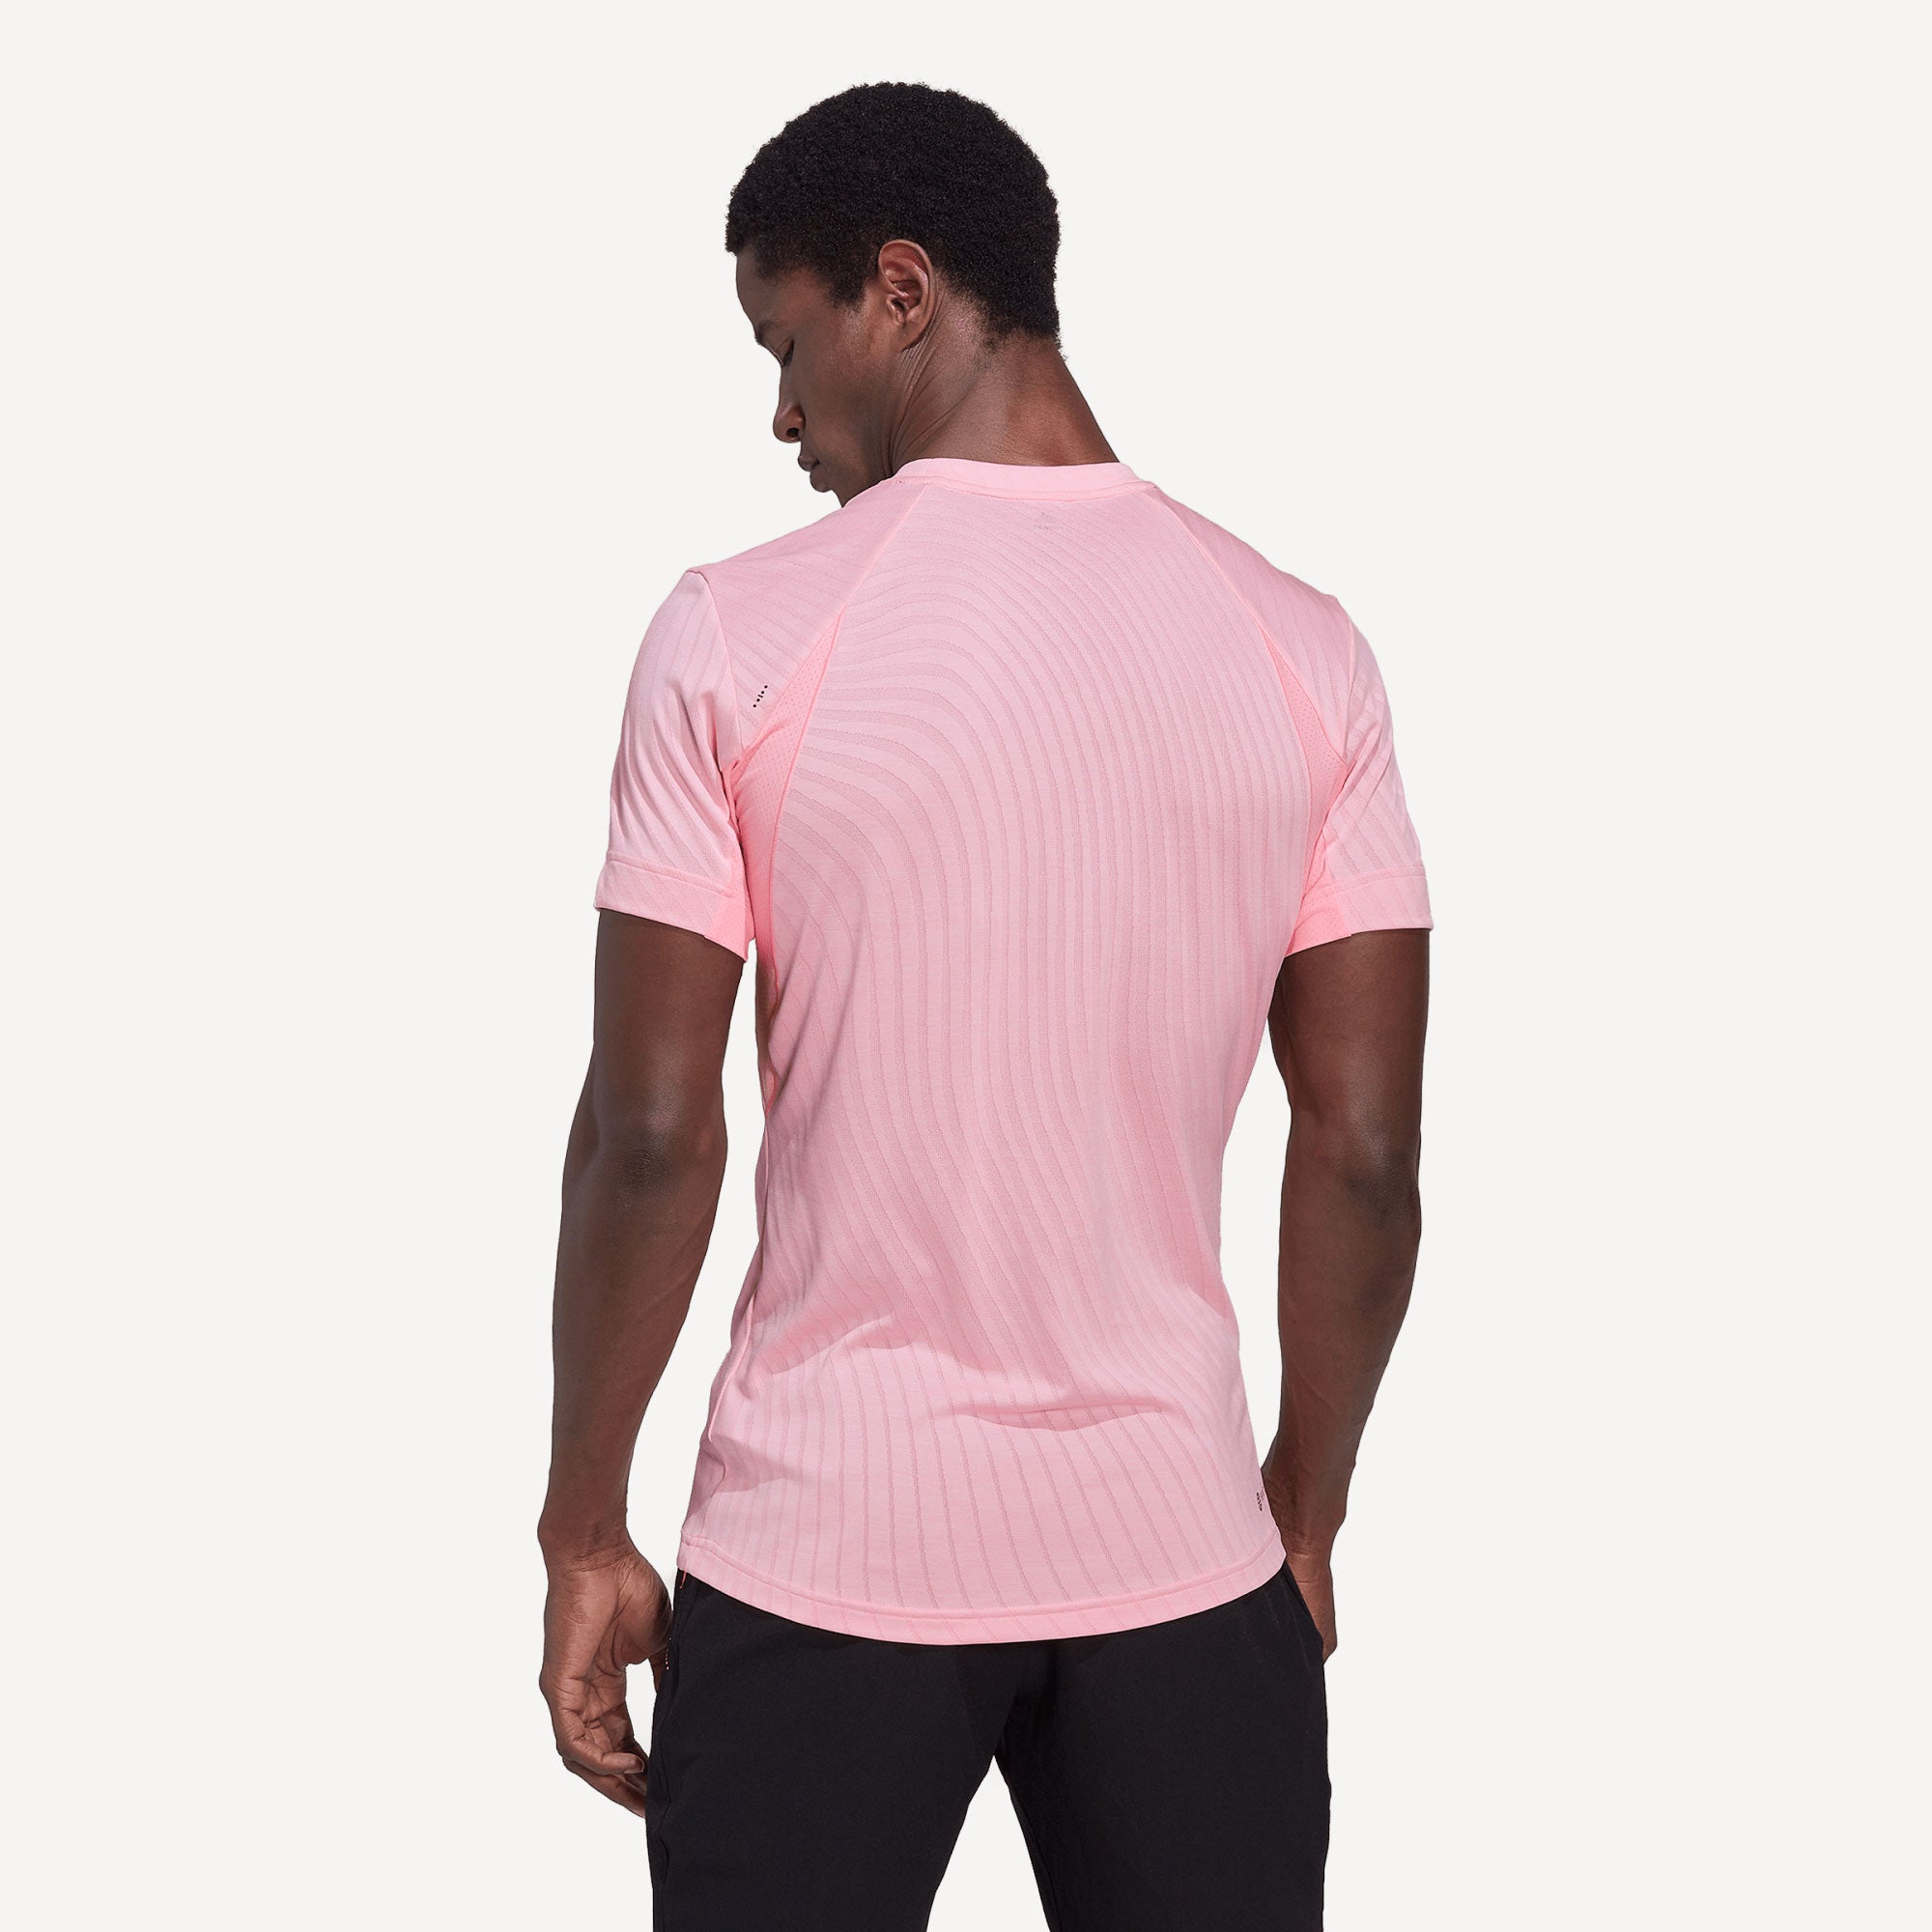 adidas Freelift Men's Tennis Shirt Pink (2)